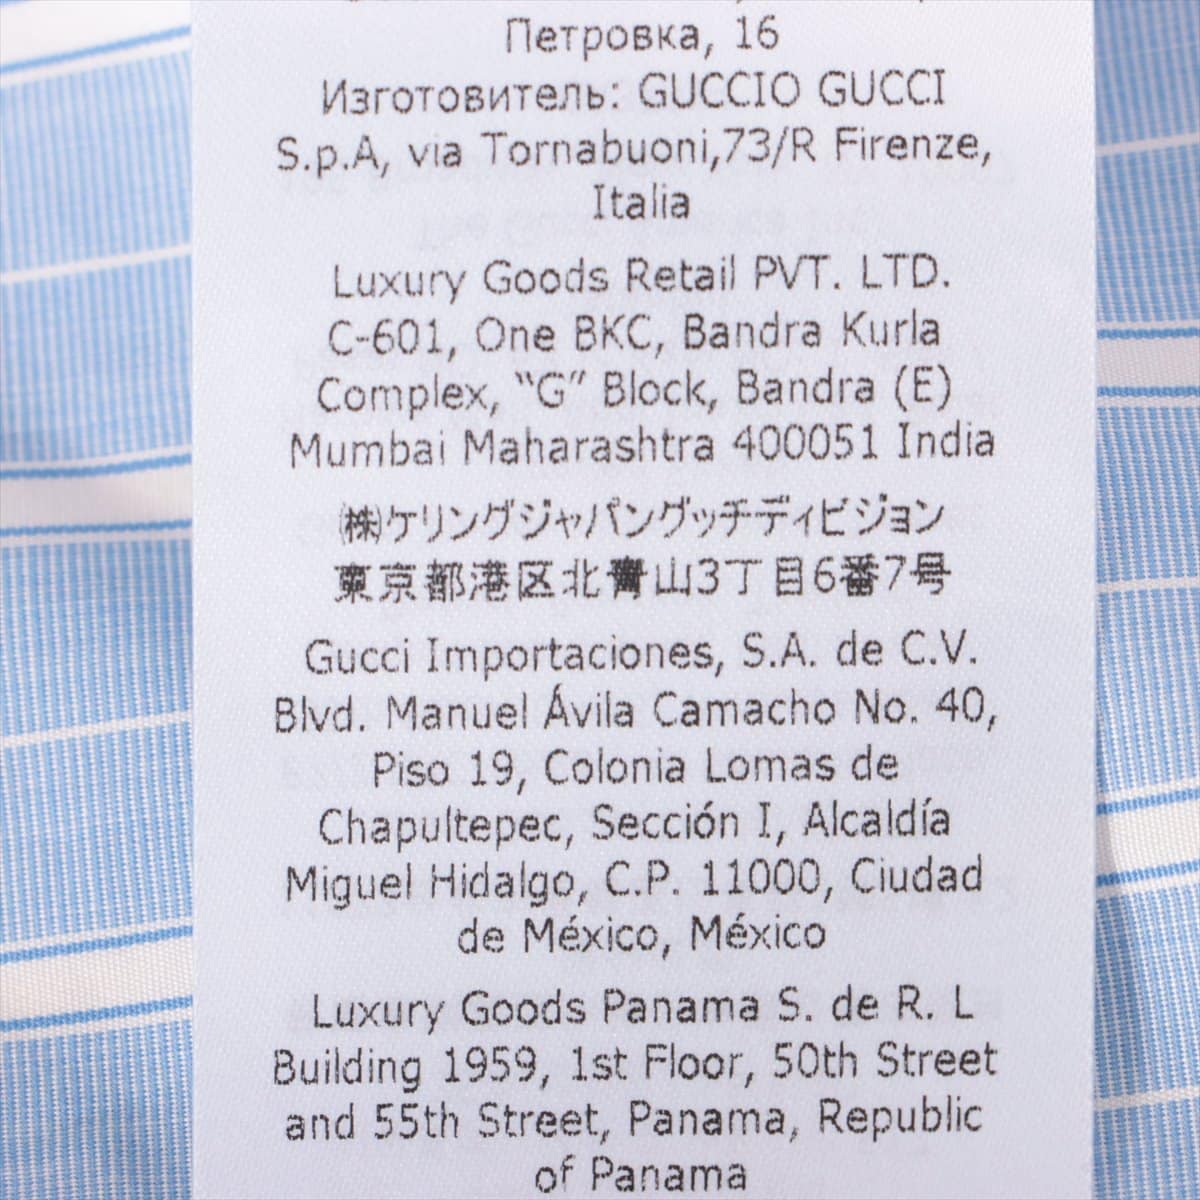 Gucci Cotton Shirt dress 36 Ladies' Blue  705696 sailor detachable